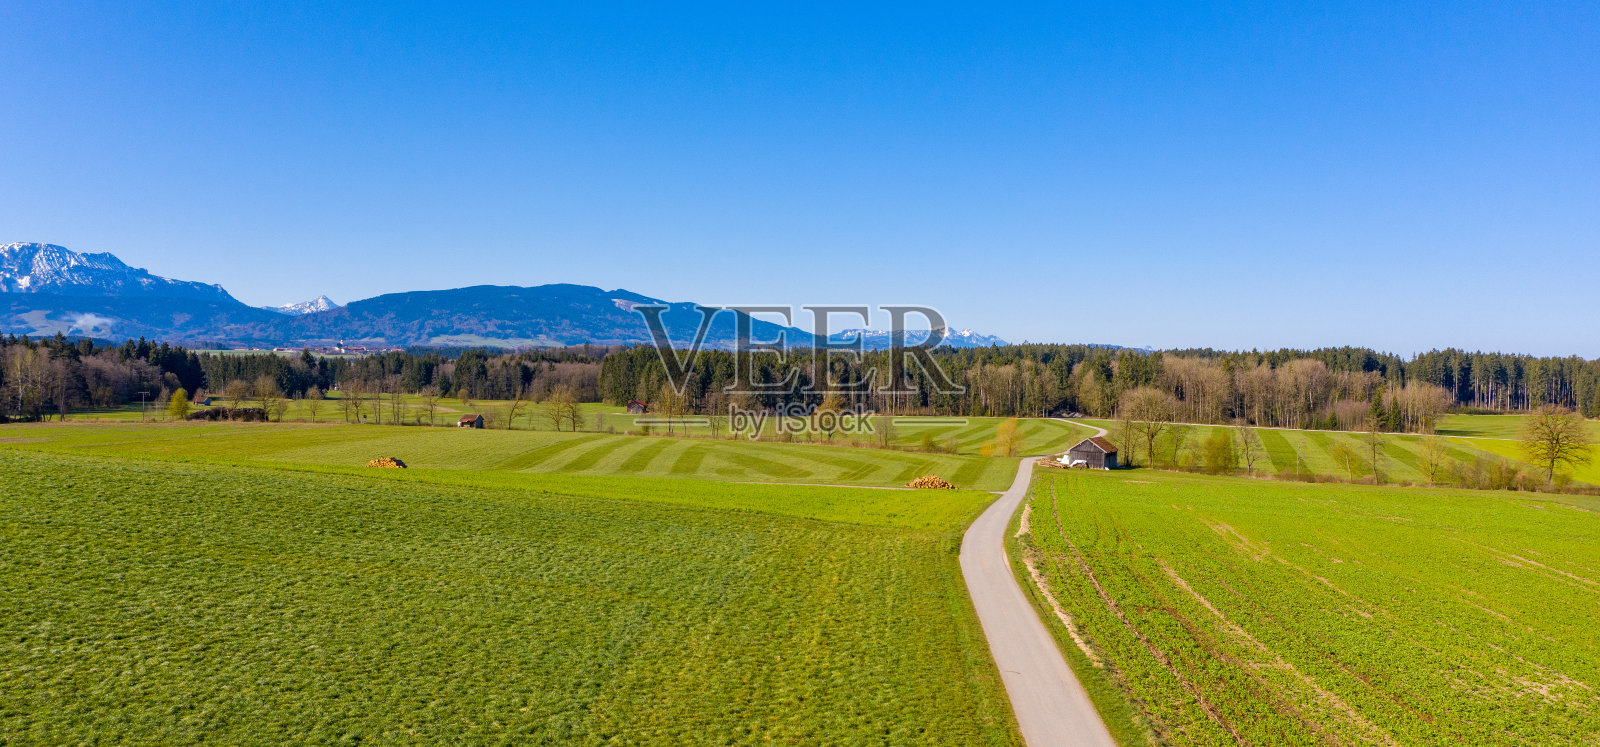 鸟瞰图:春天的巴伐利亚景观照片摄影图片